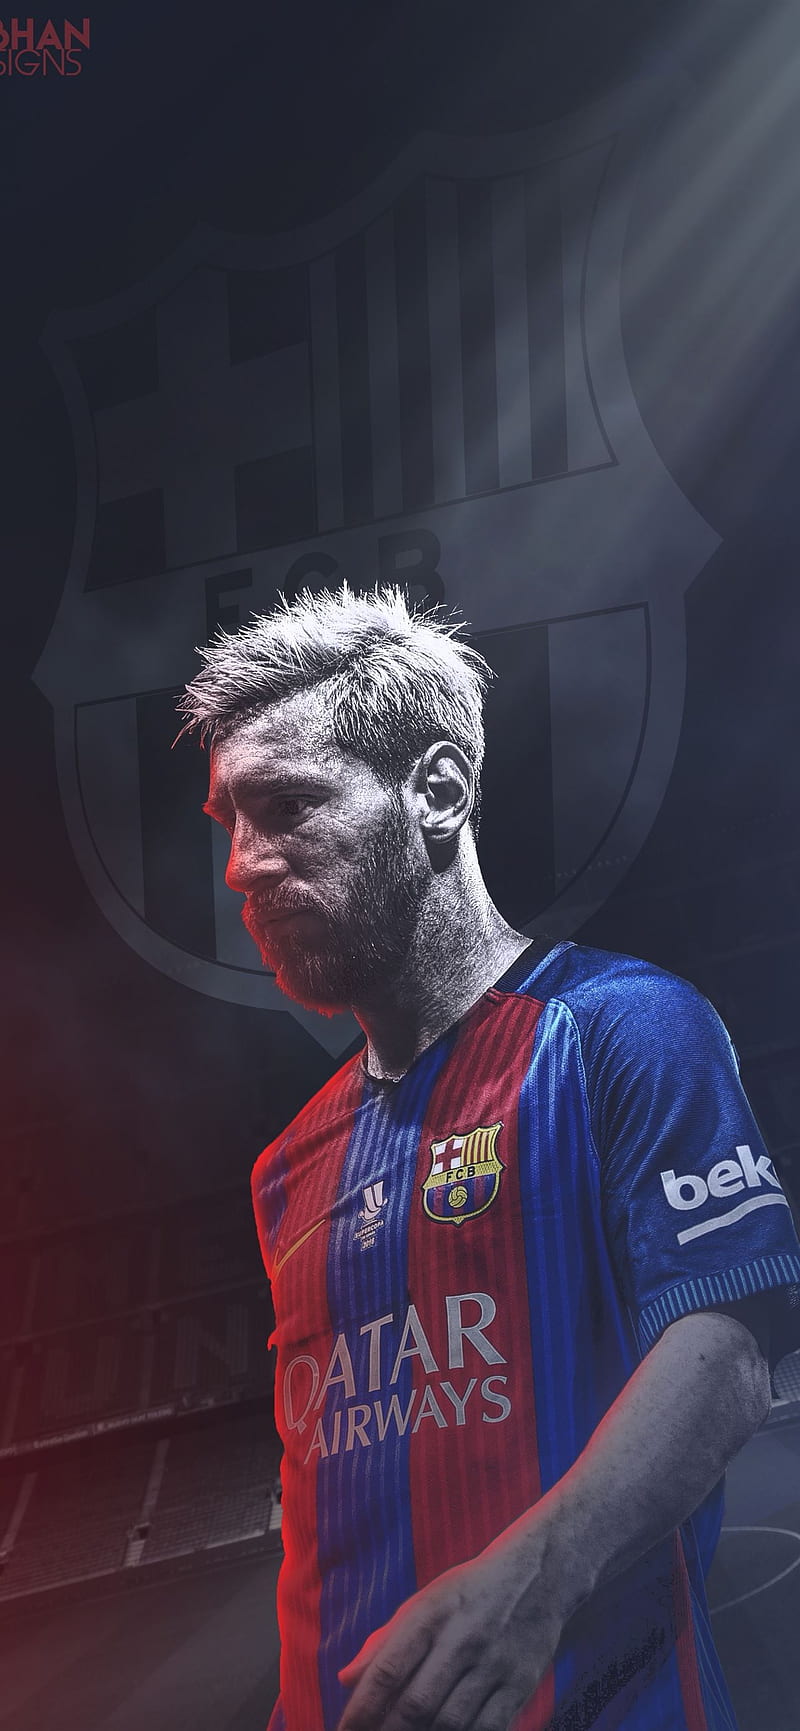 Hình nền FC Barcelona với ảnh của Messi là điều mà fan Barca không thể bỏ qua. Với màu sắc bắt mắt, những bản chất và niềm đam mê từ đội bóng và ngôi sao của mình, bạn sẽ cảm nhận được niềm tự hào khi sở hữu hình nền này.